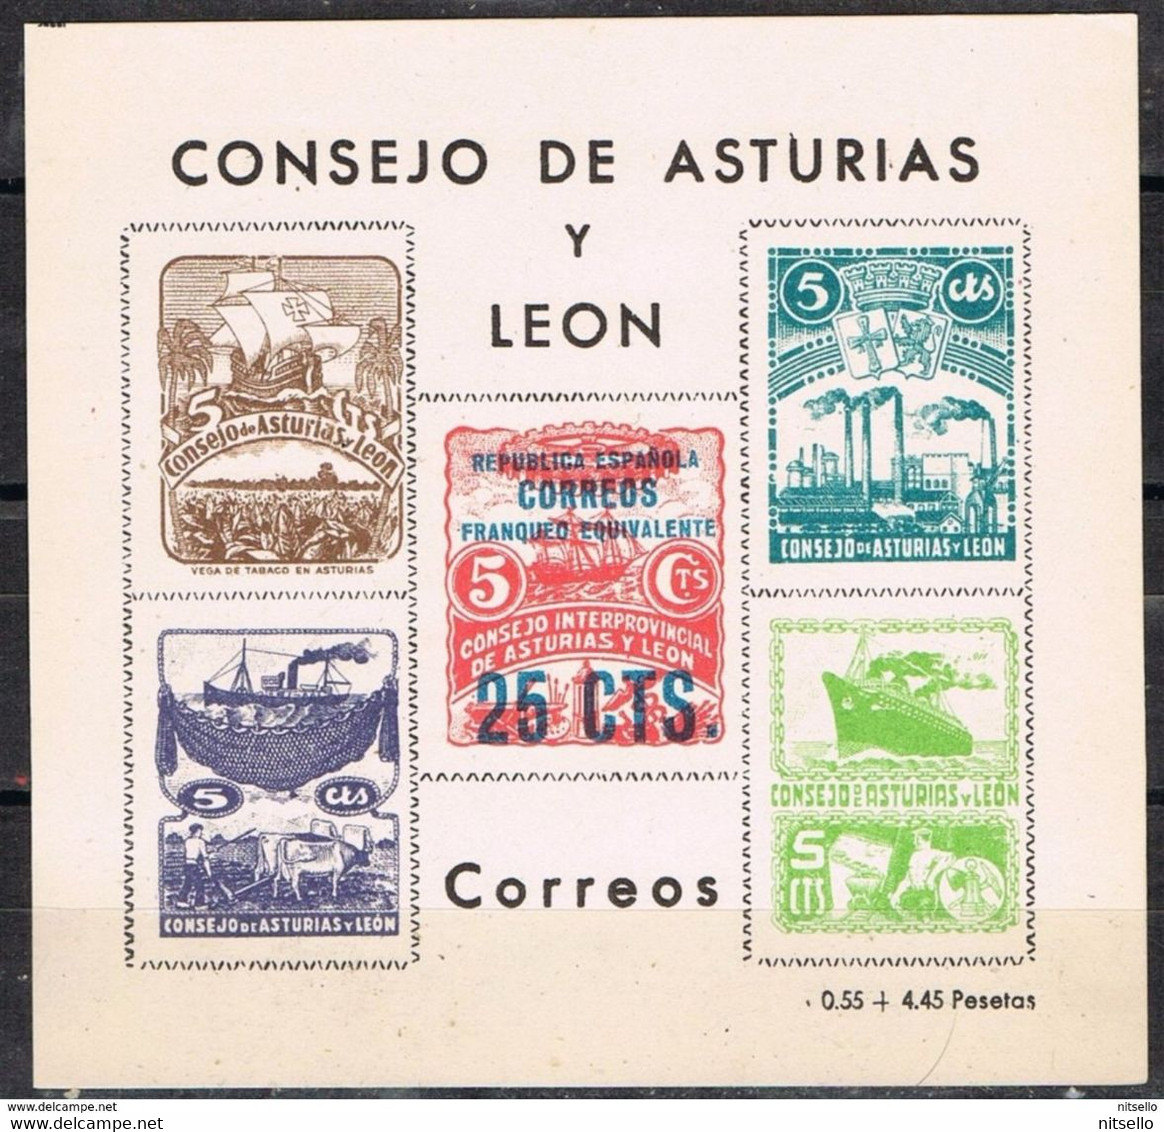 LOTE 1385  ///  CONSEJO DE ASTURIAS Y LEON   25 Ctos       ¡¡¡¡¡¡ LIQUIDATION !!!!!!! - Asturië & Leon